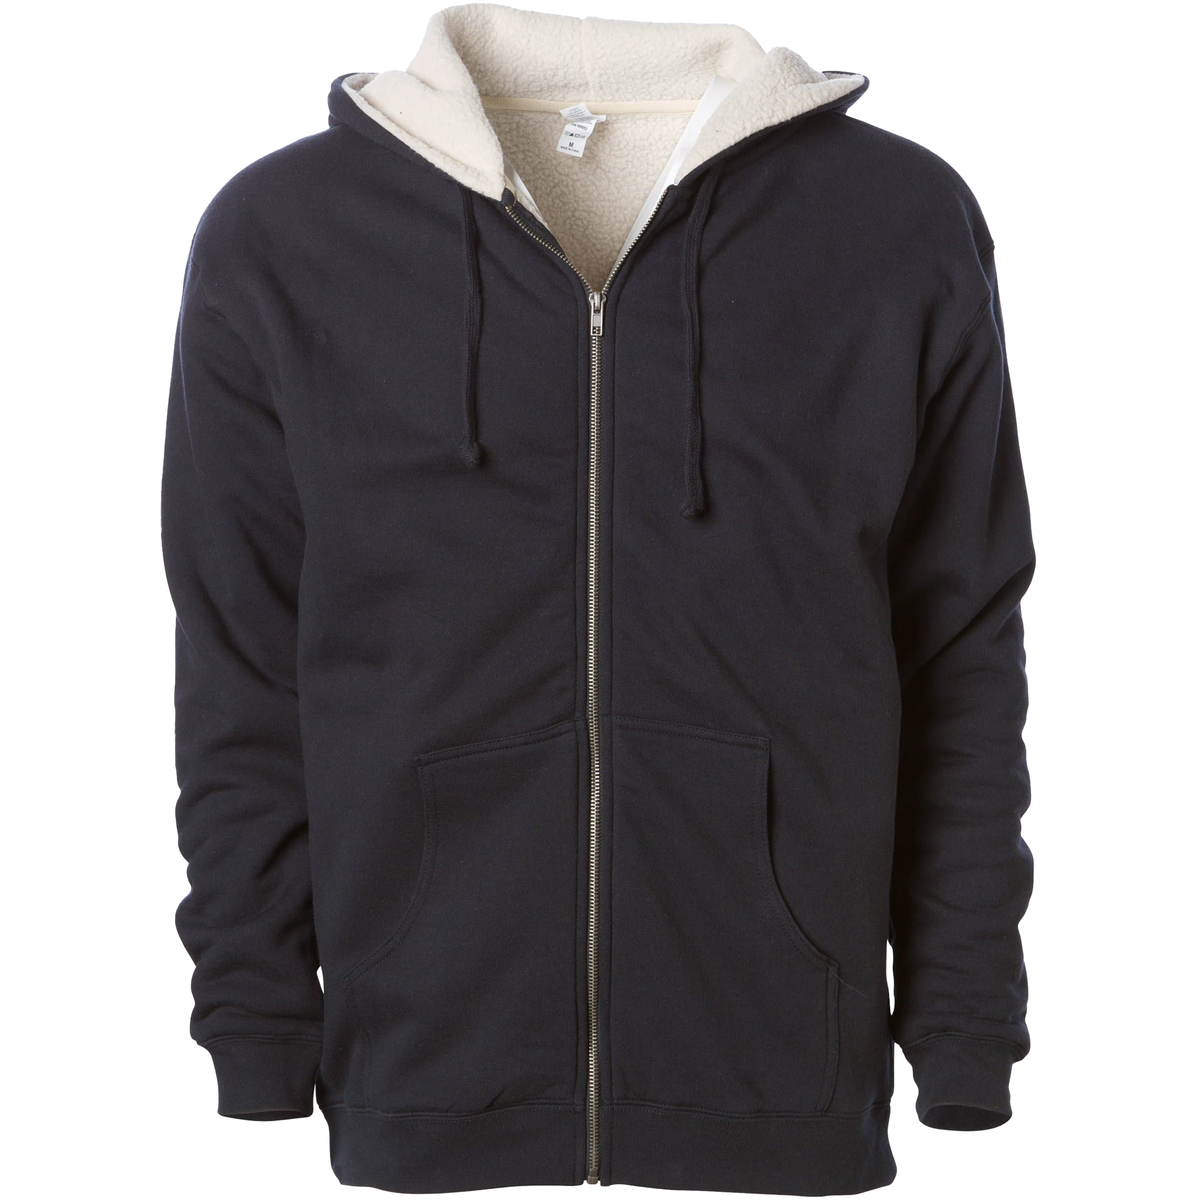 EXP40SHZ - Sherpa Lined Zip Hooded Sweatshirt